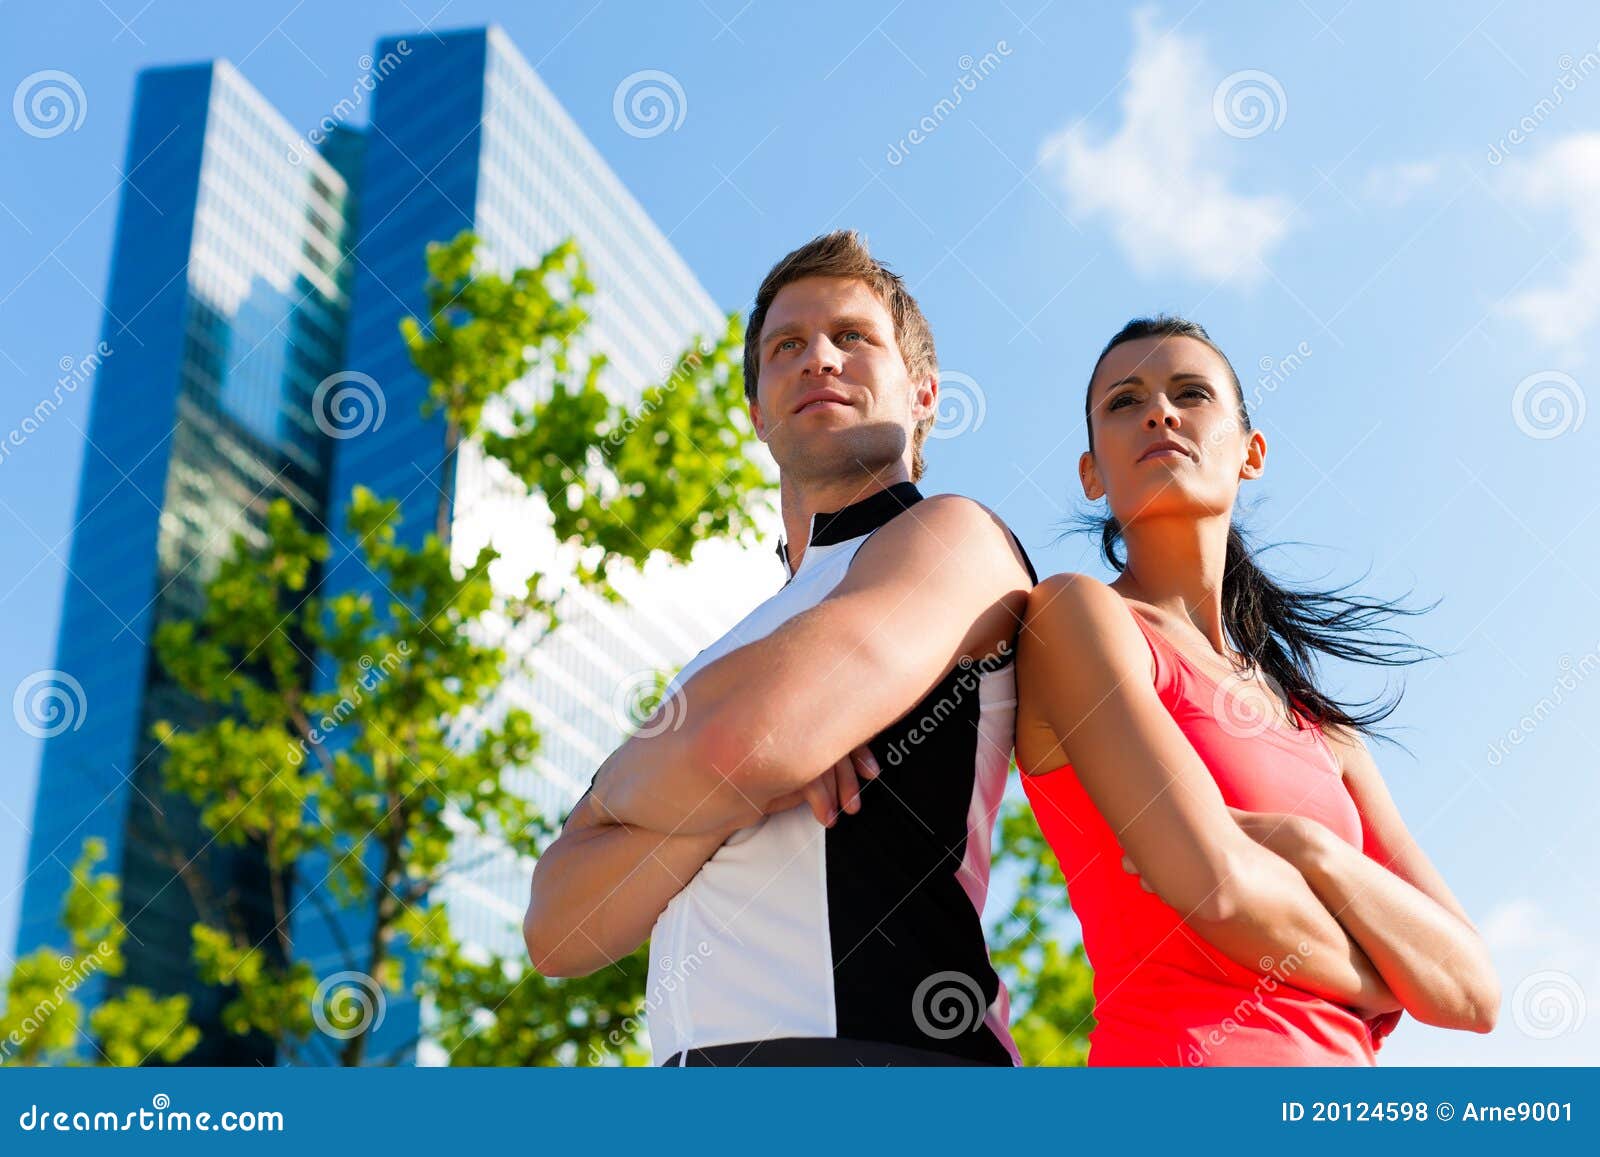 Плечем к плечу. Мужчина и женщина плечом к плечу. Парень и девушка стоят плечом к плечу. Два человека стоят плечом к плечу. Плечом к плечу фото.